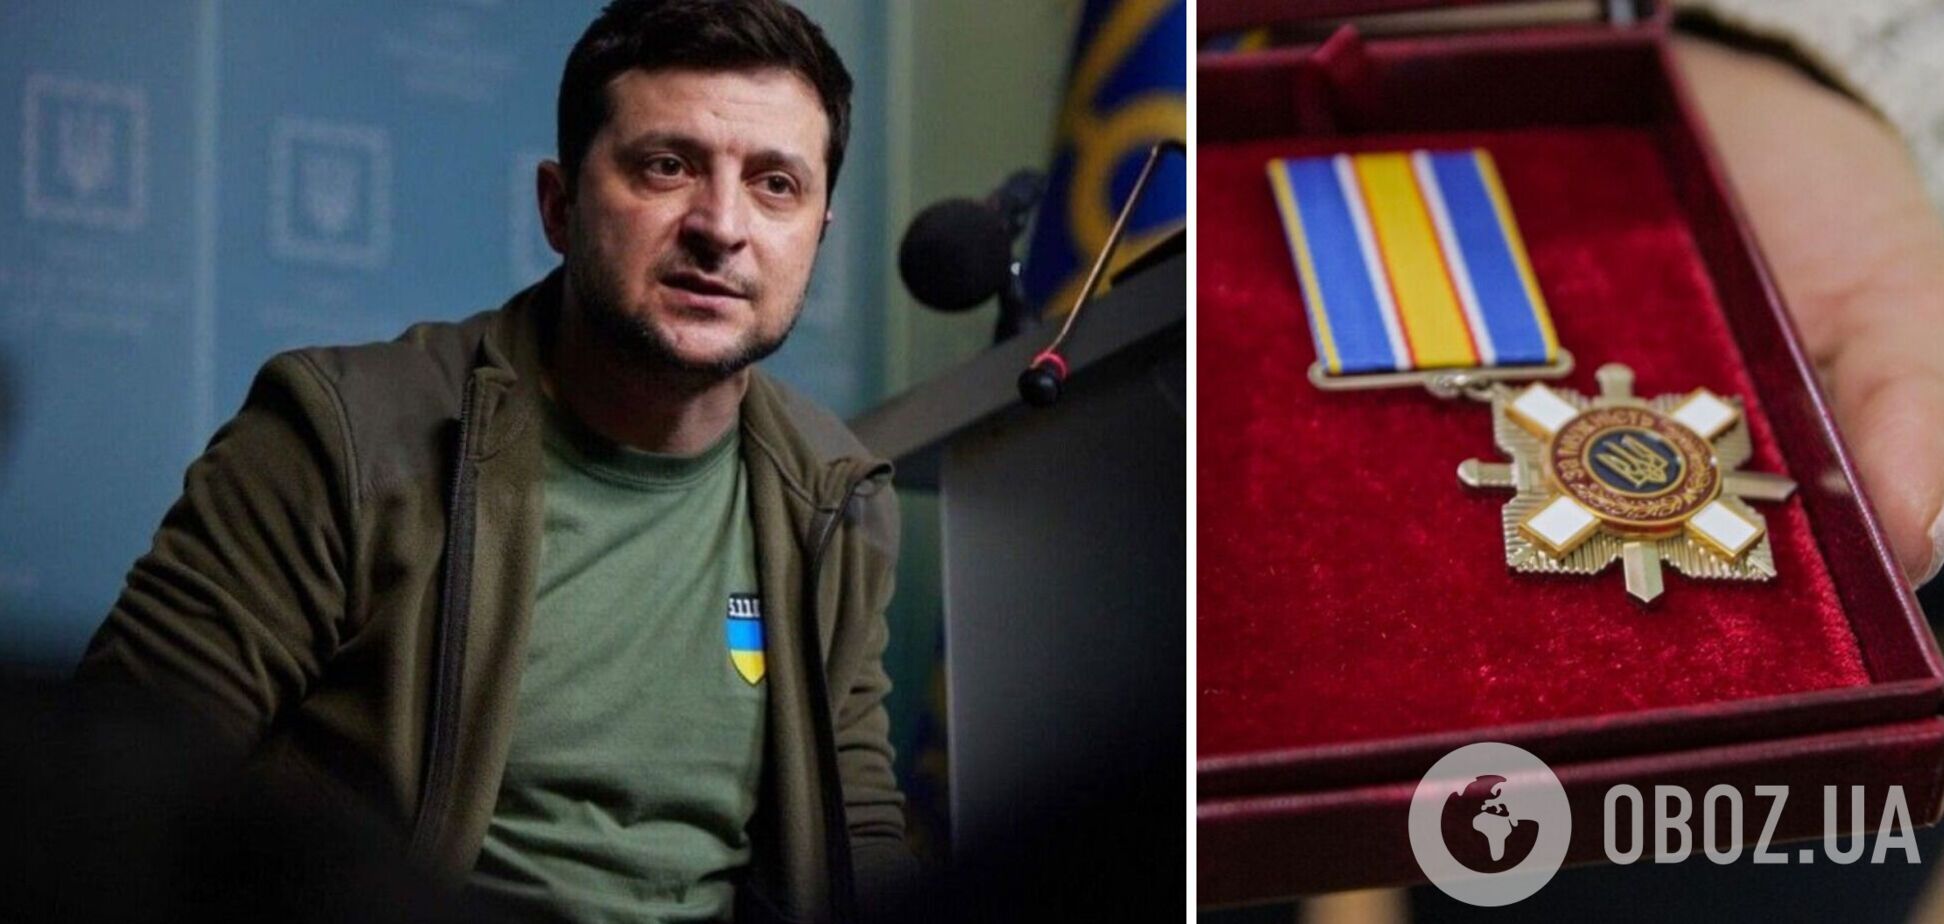 Зеленский отметил государственными наградами 302 военнослужащих ВСУ